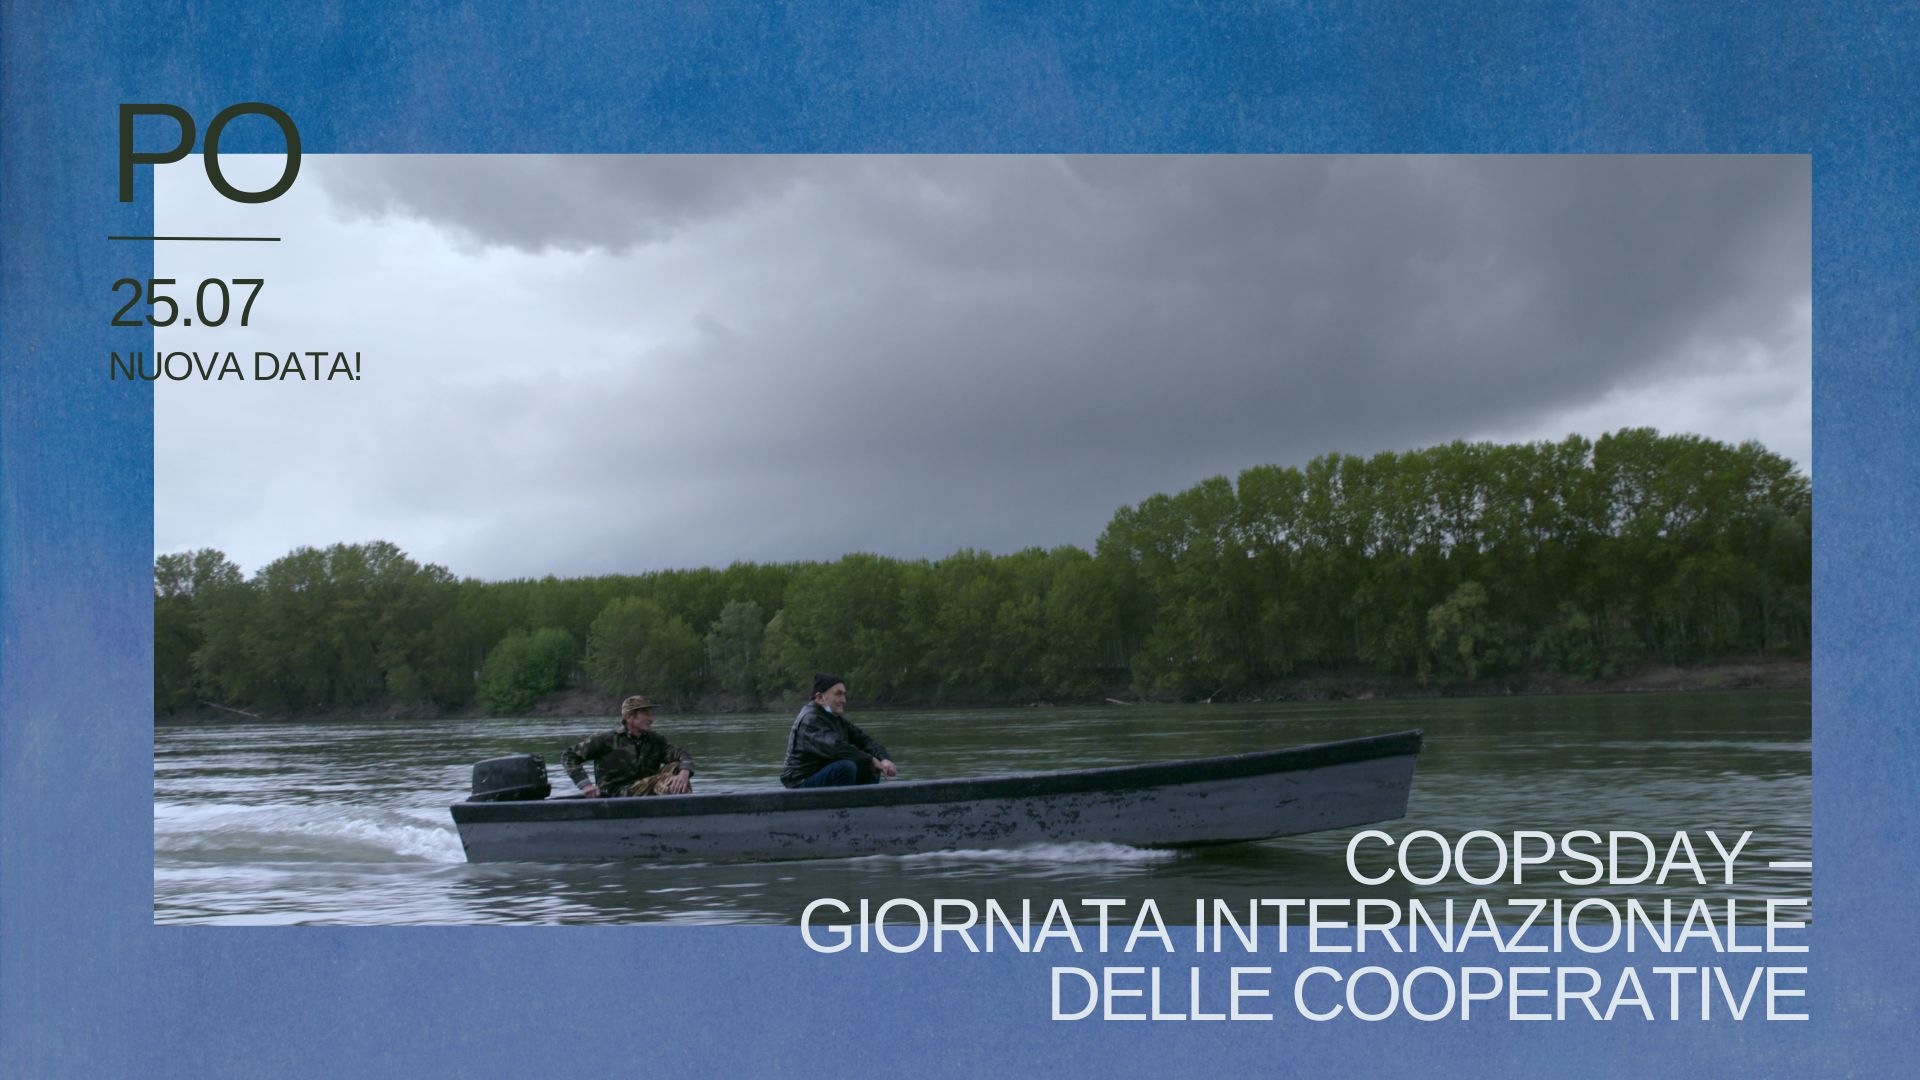 PO di Andrea Segre: martedì 25 luglio la proiezione del film documentario per il Coopsday, con raccolta fondi per le cooperative agricole romagnole alluvionate